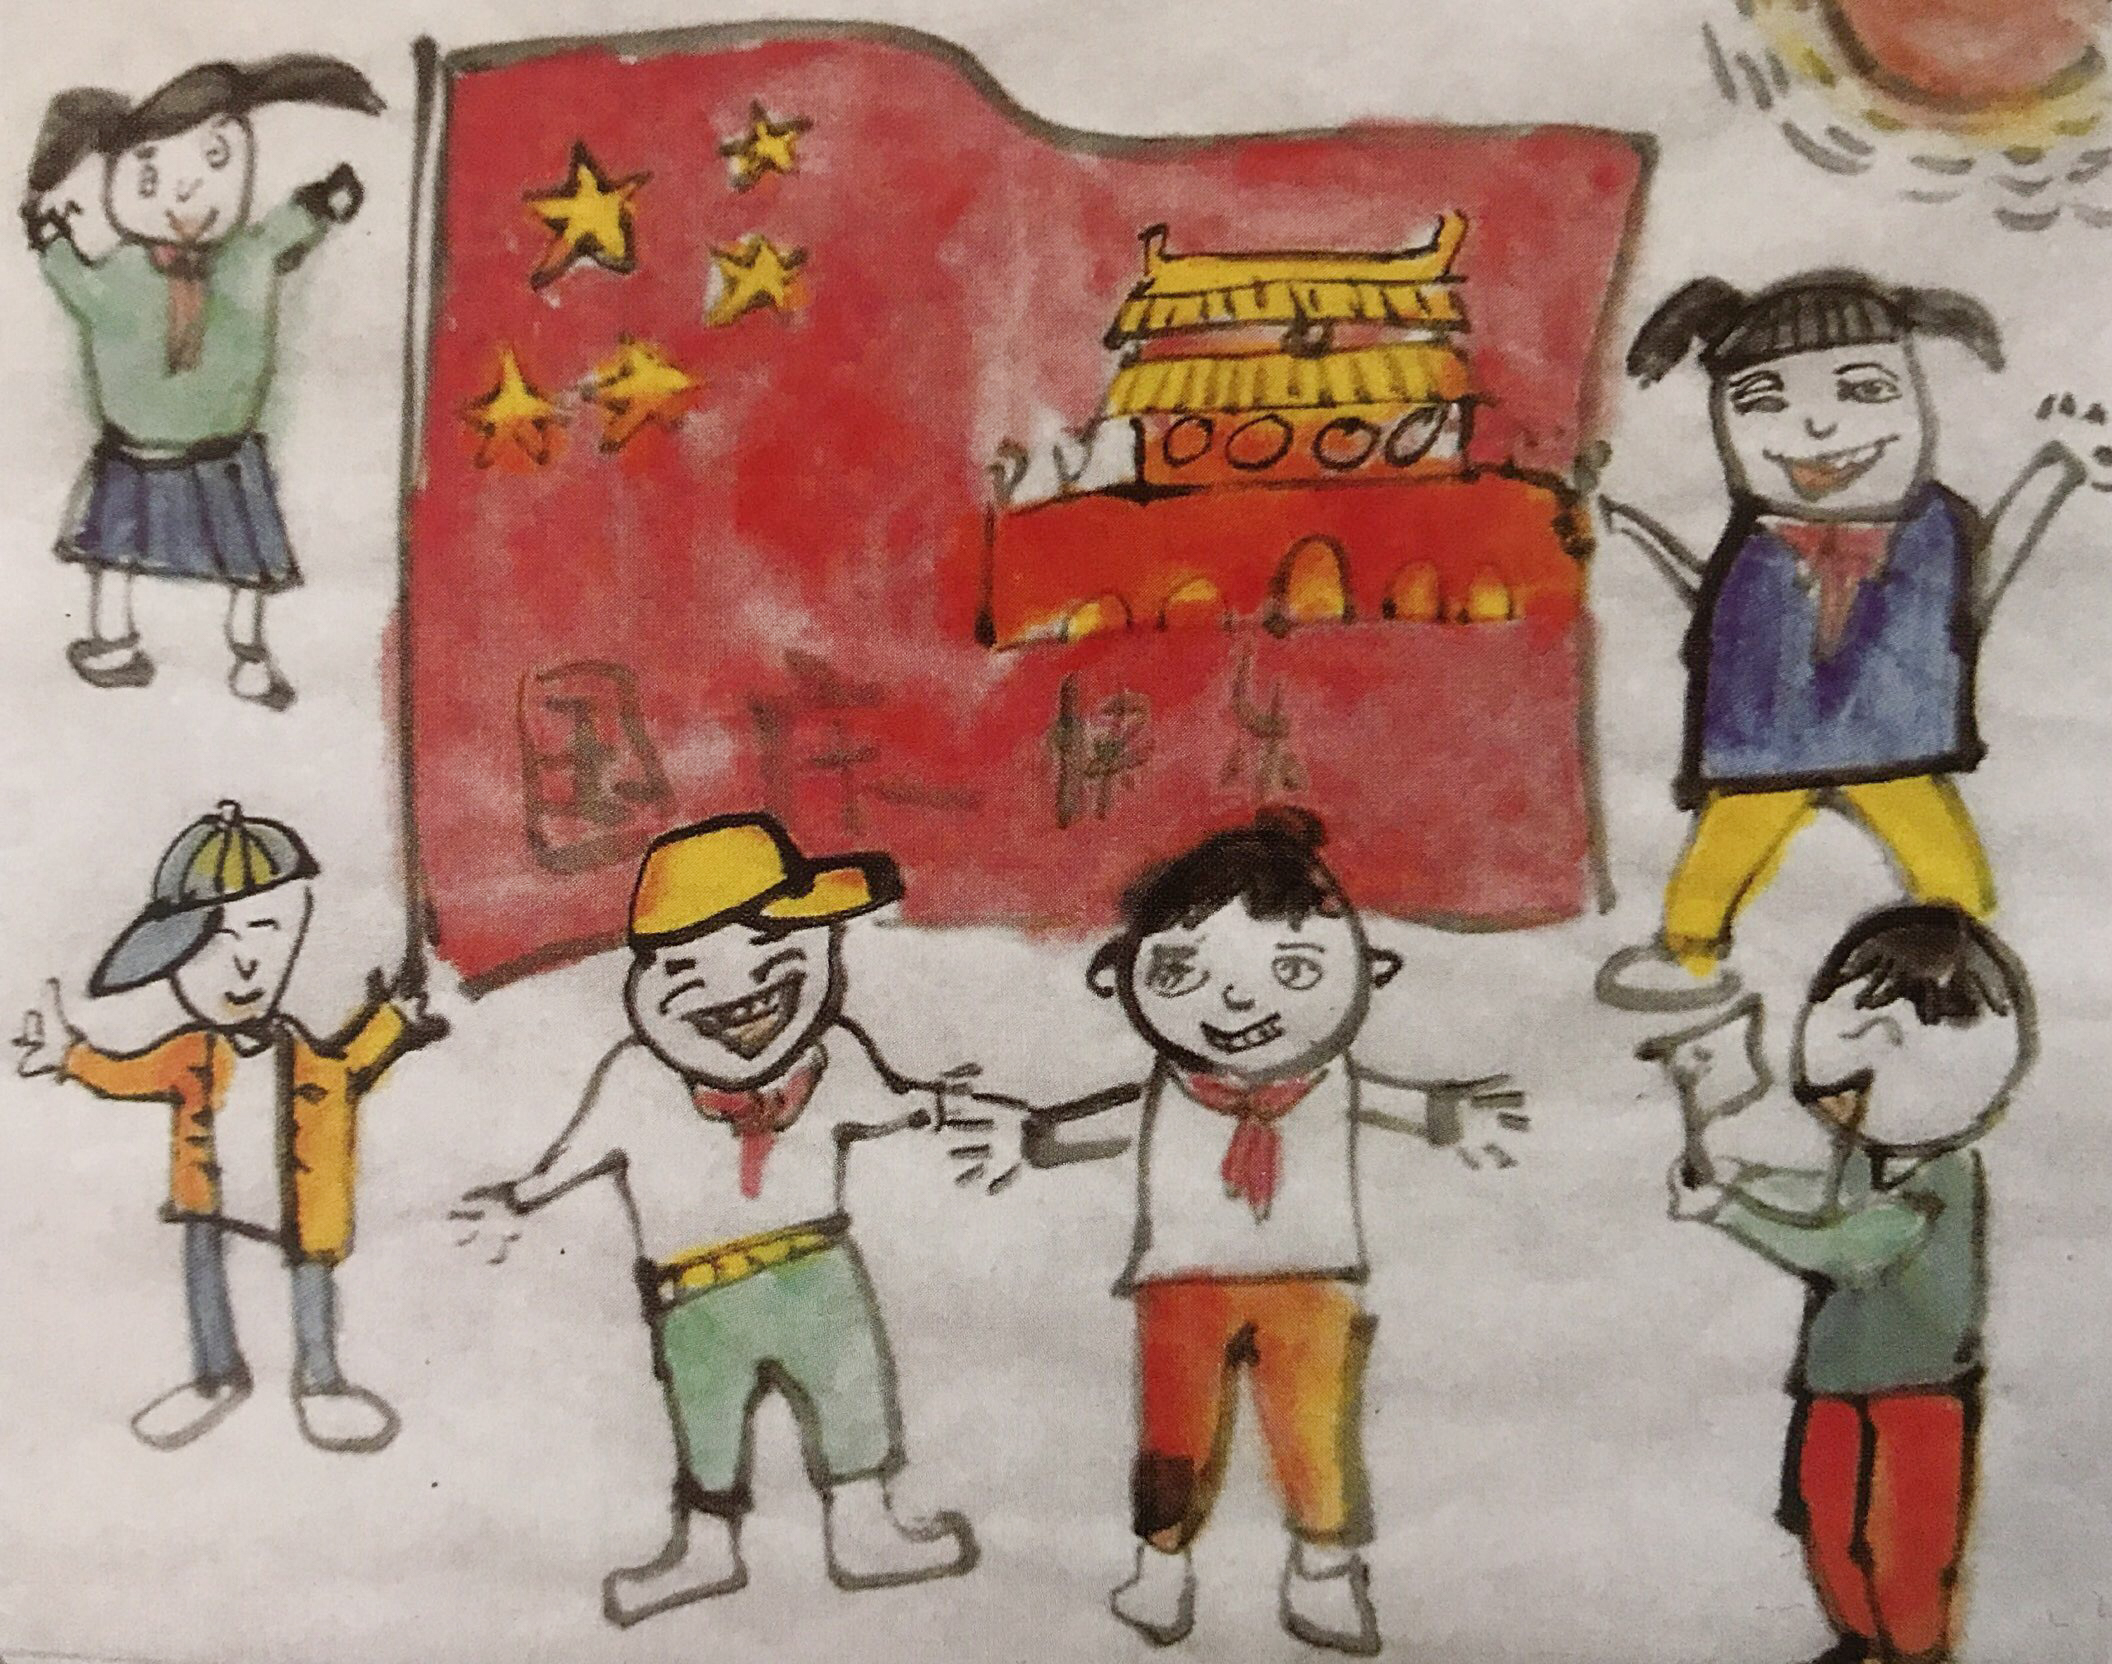 中国美术学院美术考级人物画考级三级(初级)示范图例《国庆节》。